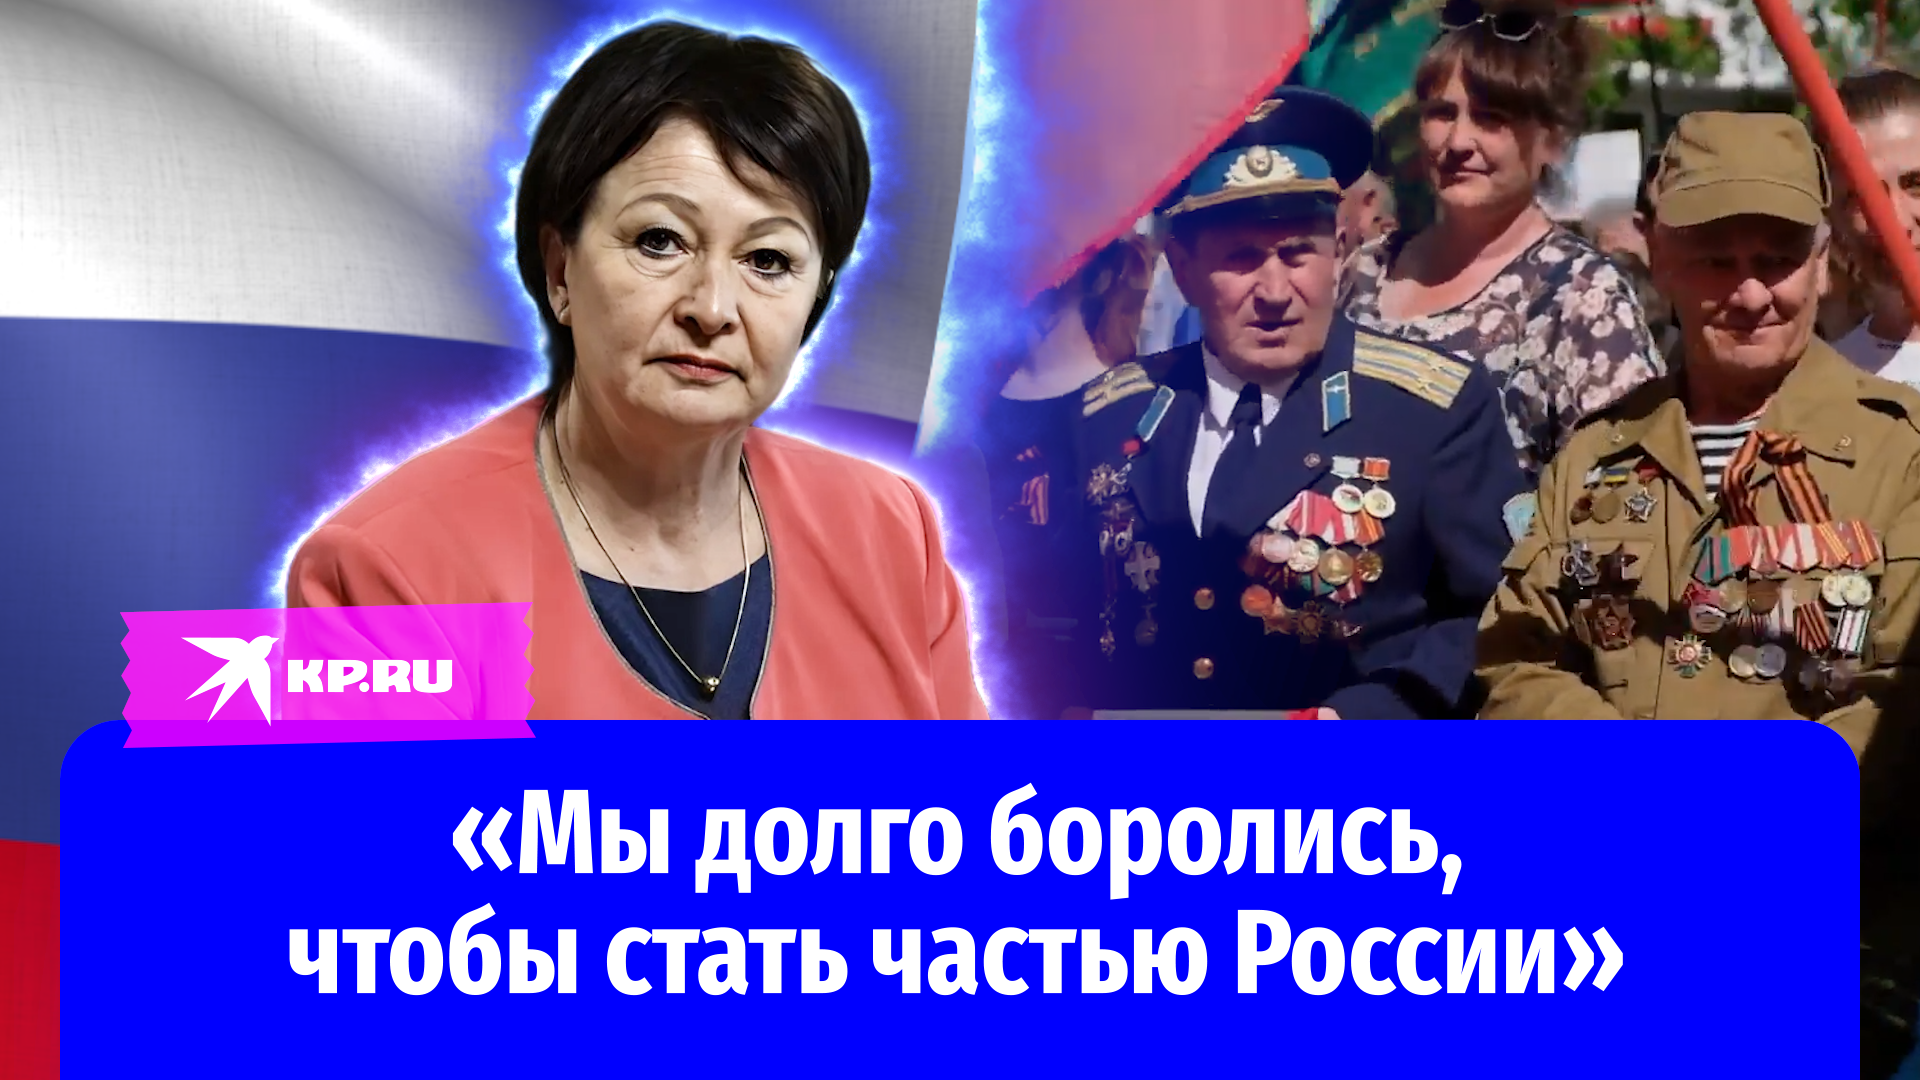 Глава администрации Мелитополя Галина Данильченко: «Мы долго боролись, чтобы стать частью России»